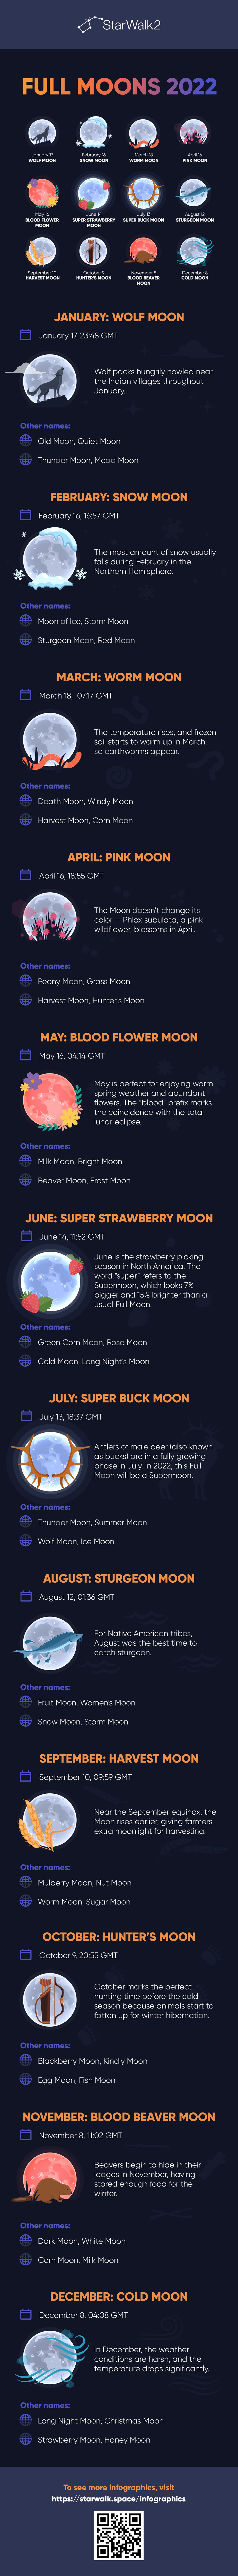 Full Moons 2022